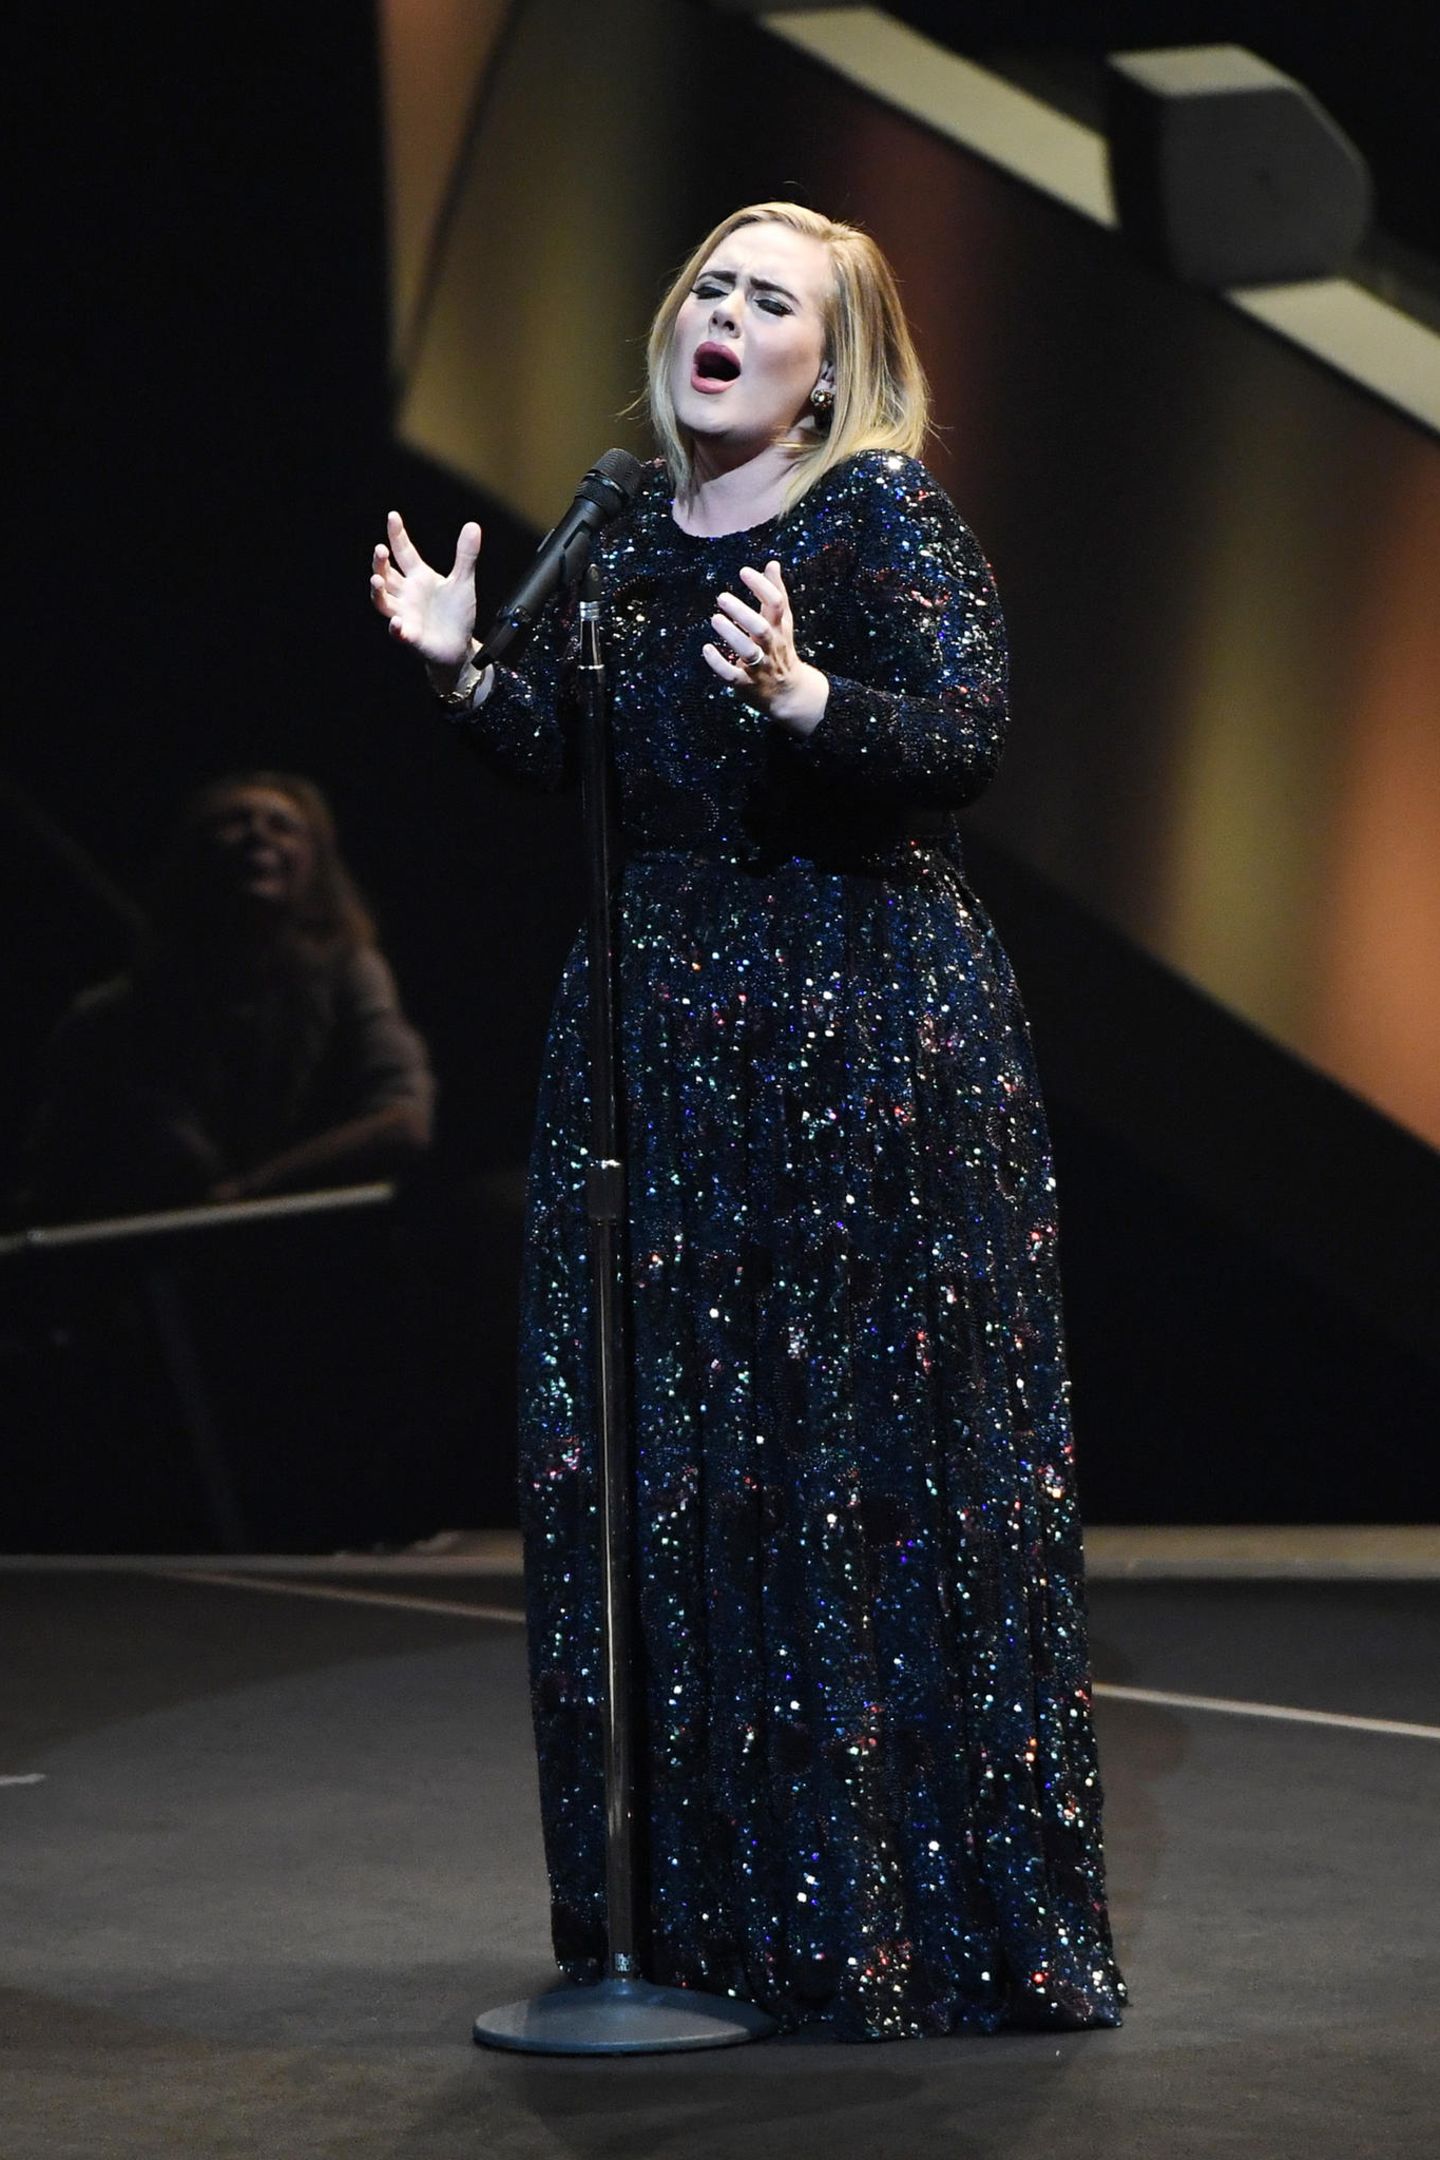 Bei einem Konzert in Phoenix, Arizona, verzaubert Adele ihre Fans nicht nur mit ihrer unglaublichen Stimme: Die Sängerin trägt eine bodenlange Pailletten-Robe, die die Kurven der Britin perfekt in Szene setzt. Glamouröser geht's nicht!